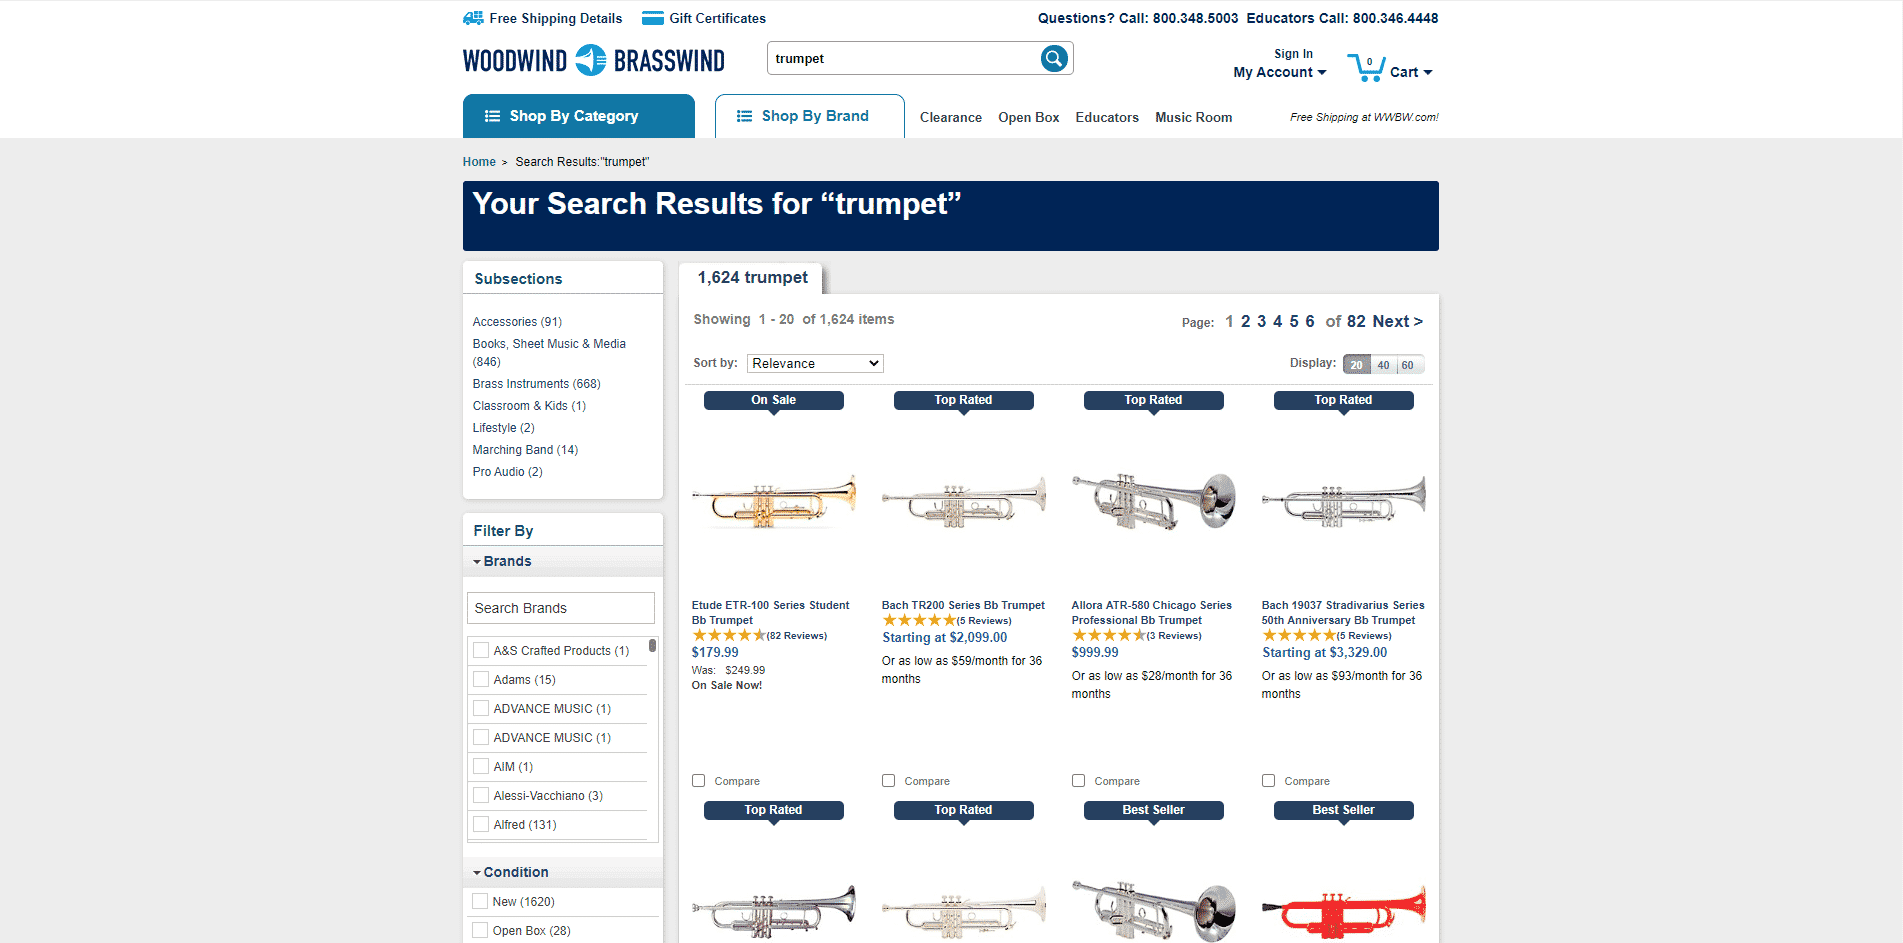 Woodwind & Brasswind buy Trumpets online